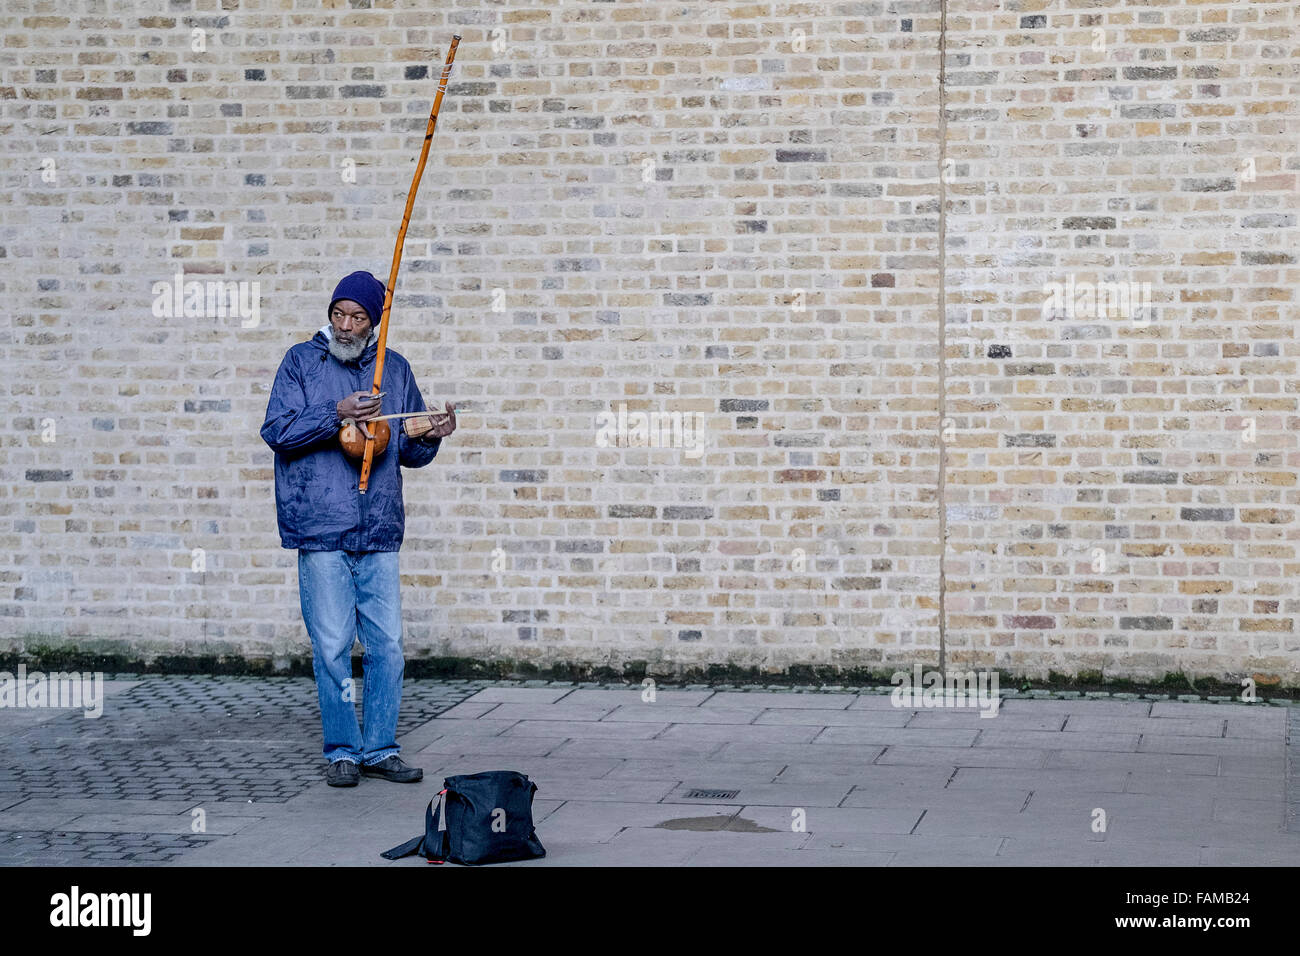 Sulla South Bank di Londra un busker, Rabimsha svolge un berimbau, un tradizionale africana/strumento brasiliano. Foto Stock